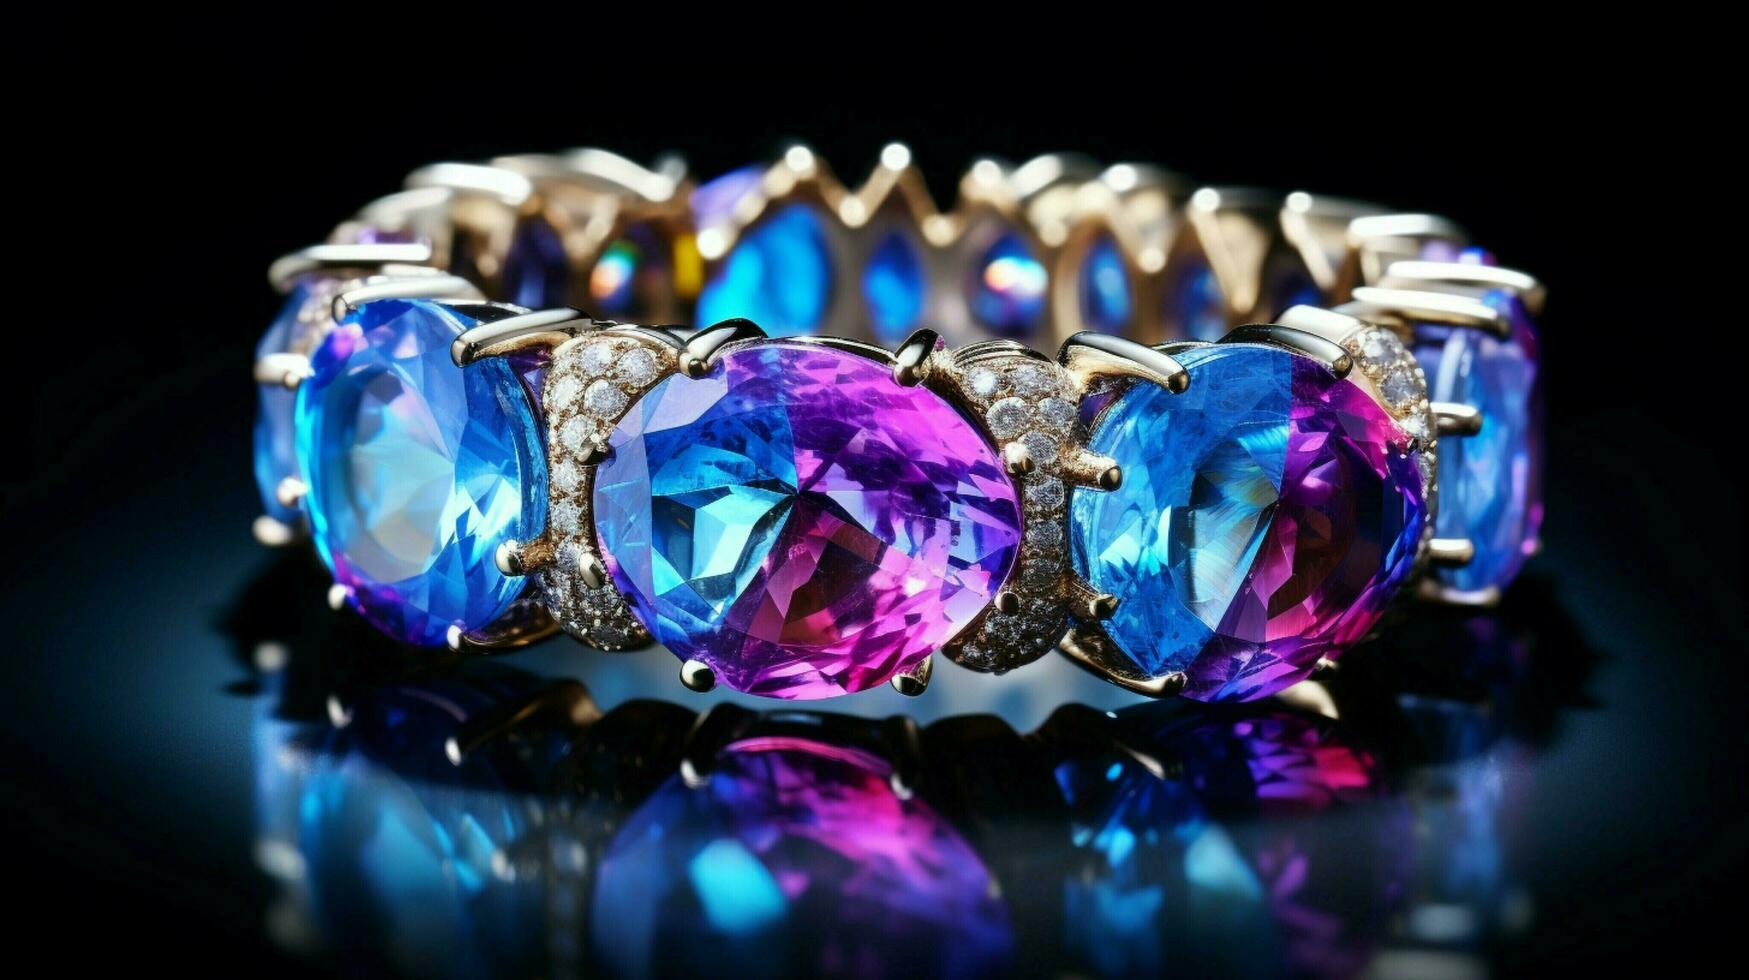 luxury jewelry glows with vibrant gemstones photo